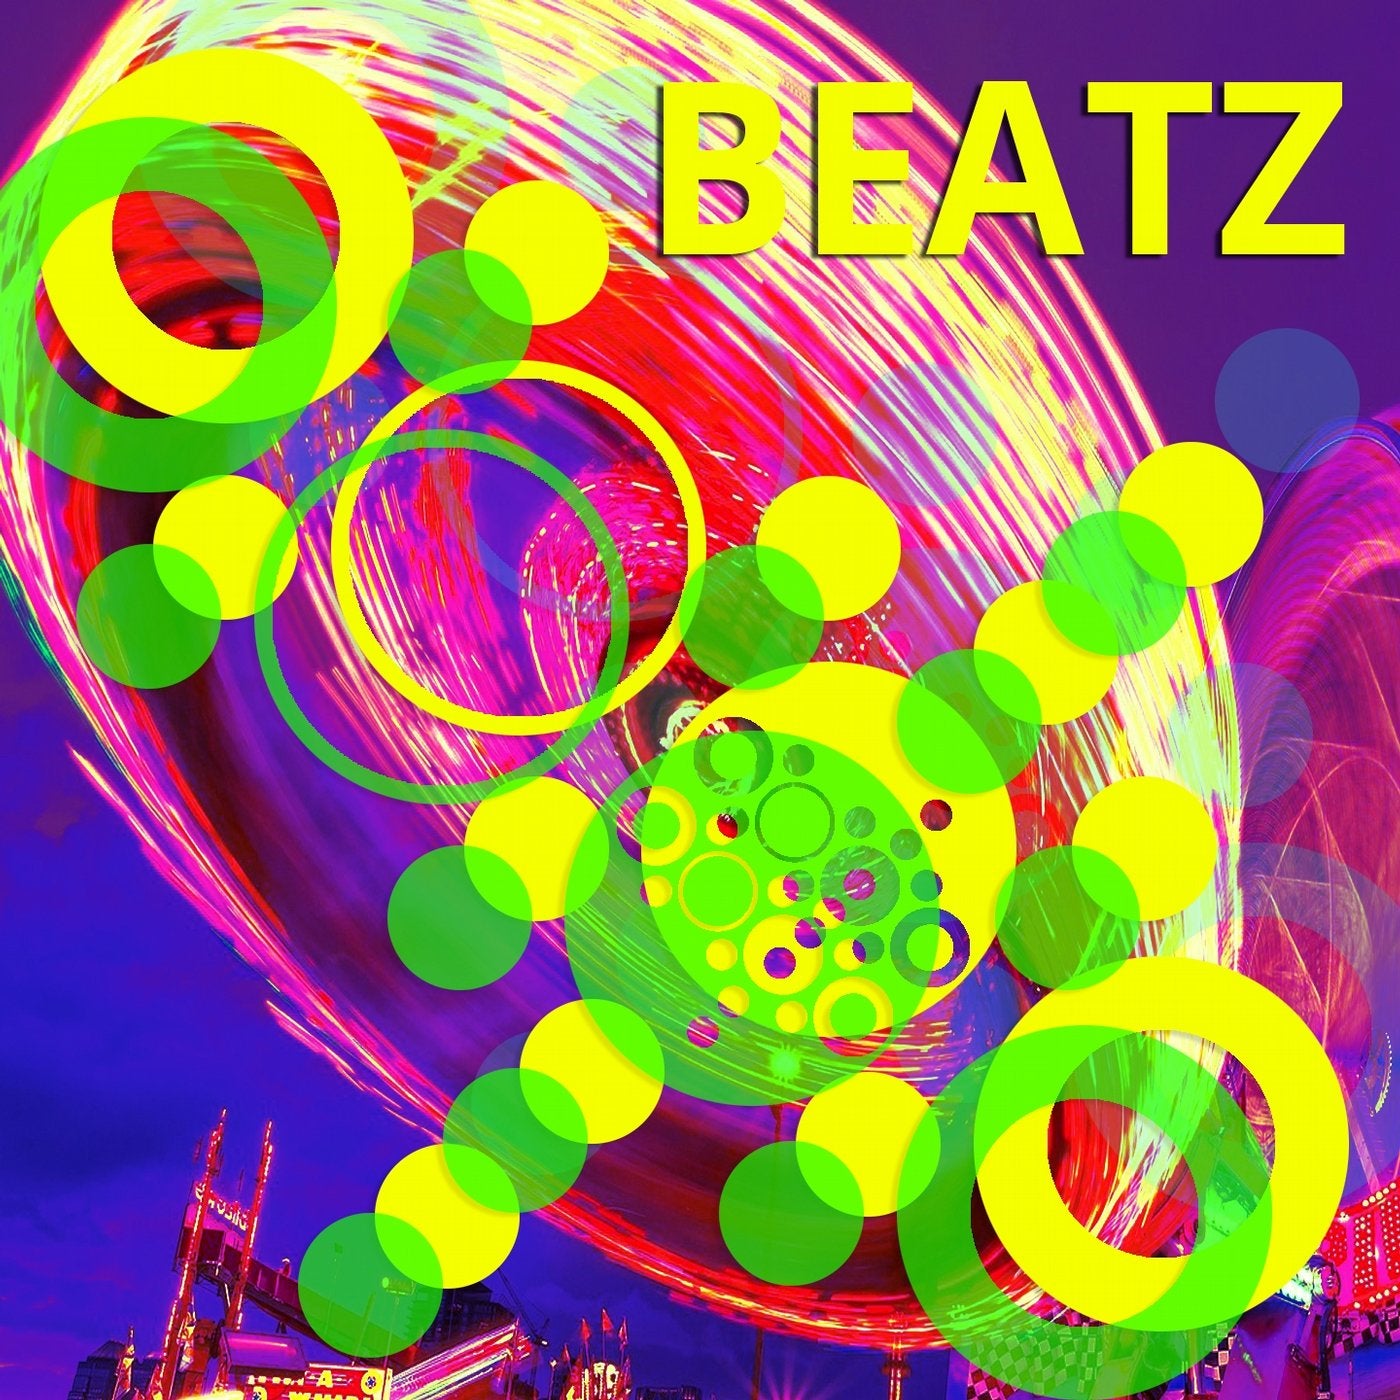 Beatz